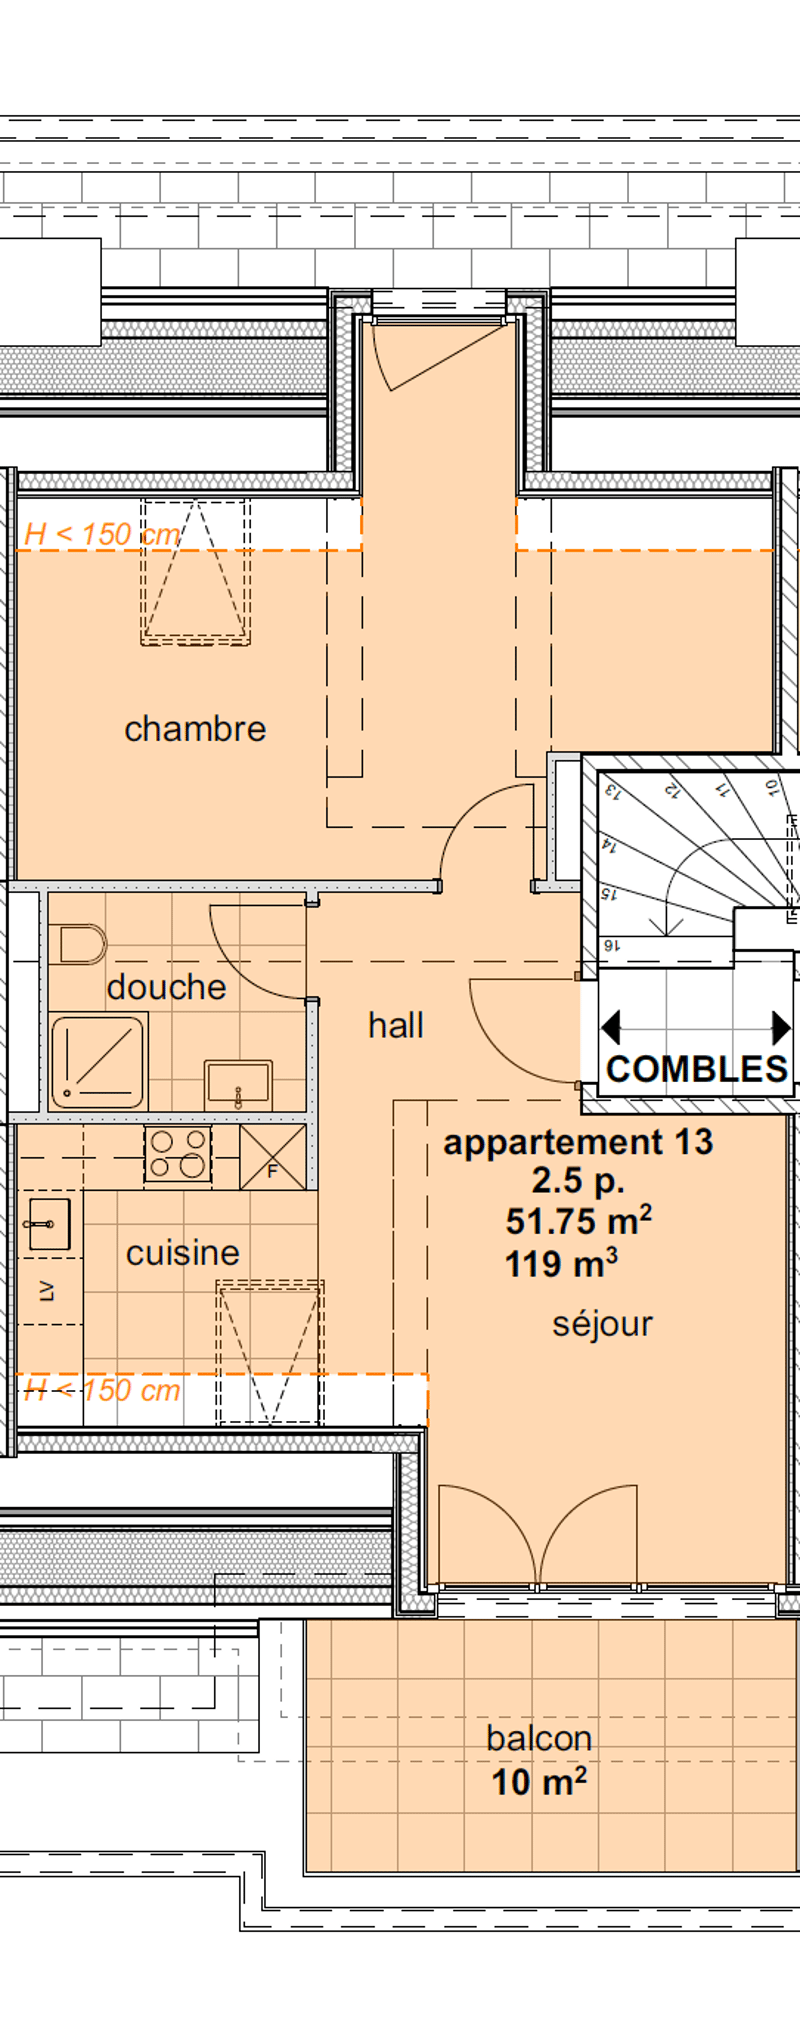 Appartements neufs de 3.5 pièces aux combles (3ème étage) - (Sud centre) (2)